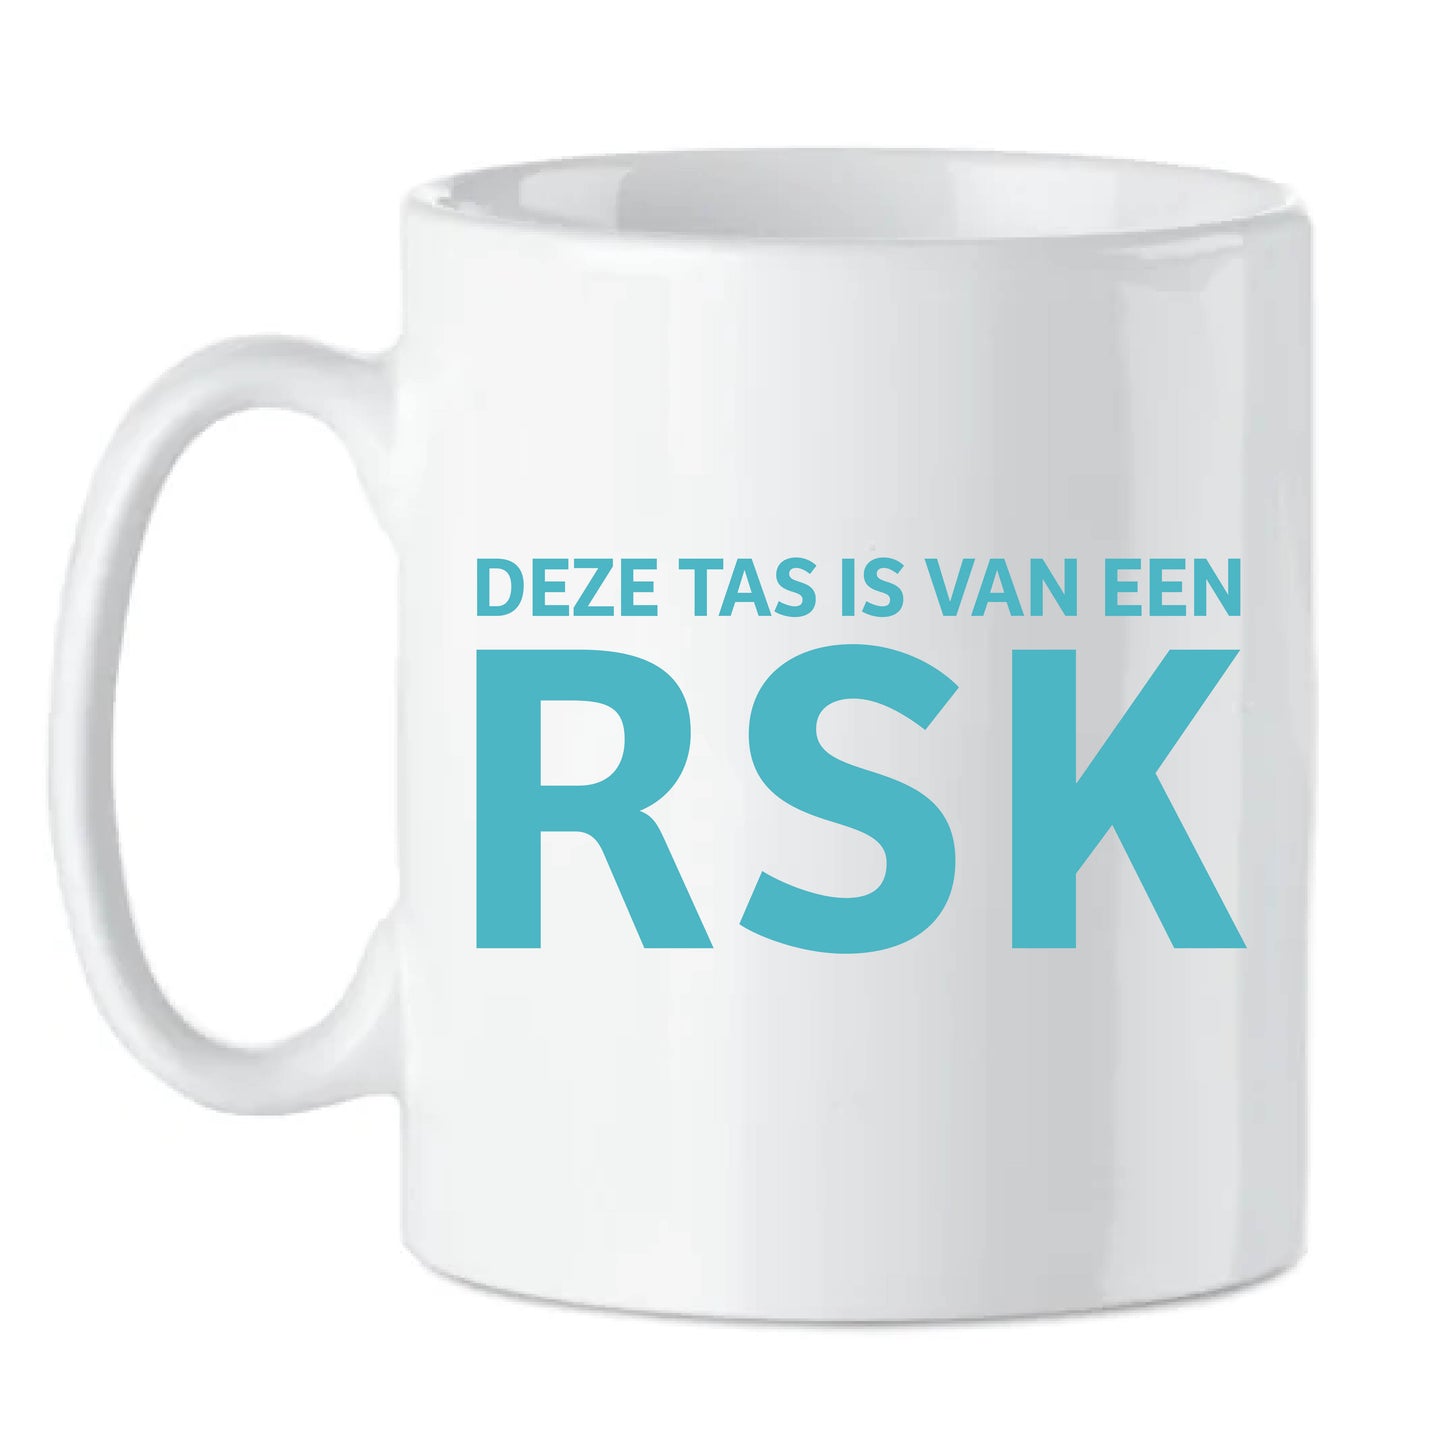 Arnout Van den Bossche - "Deze tas is van een RSK" (koffietas)